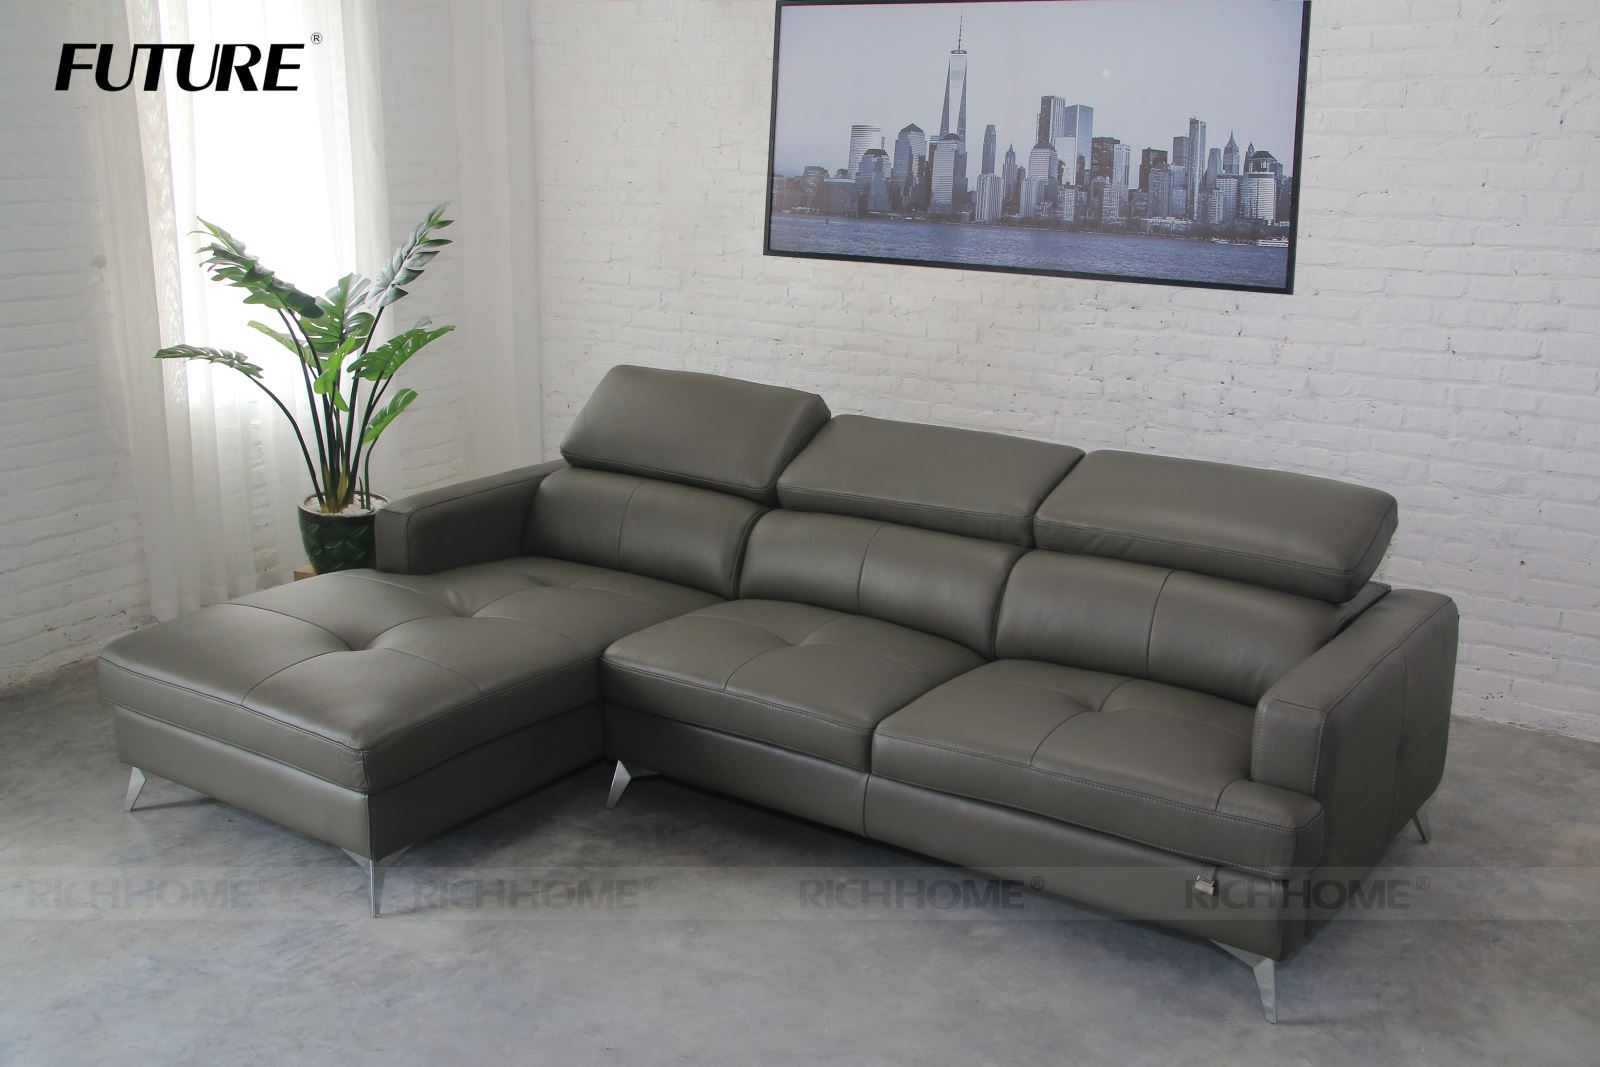 Gợi ý cách chọn bộ sofa góc cho chung cư vừa đẹp vừa tiết kiệm - Ảnh 3